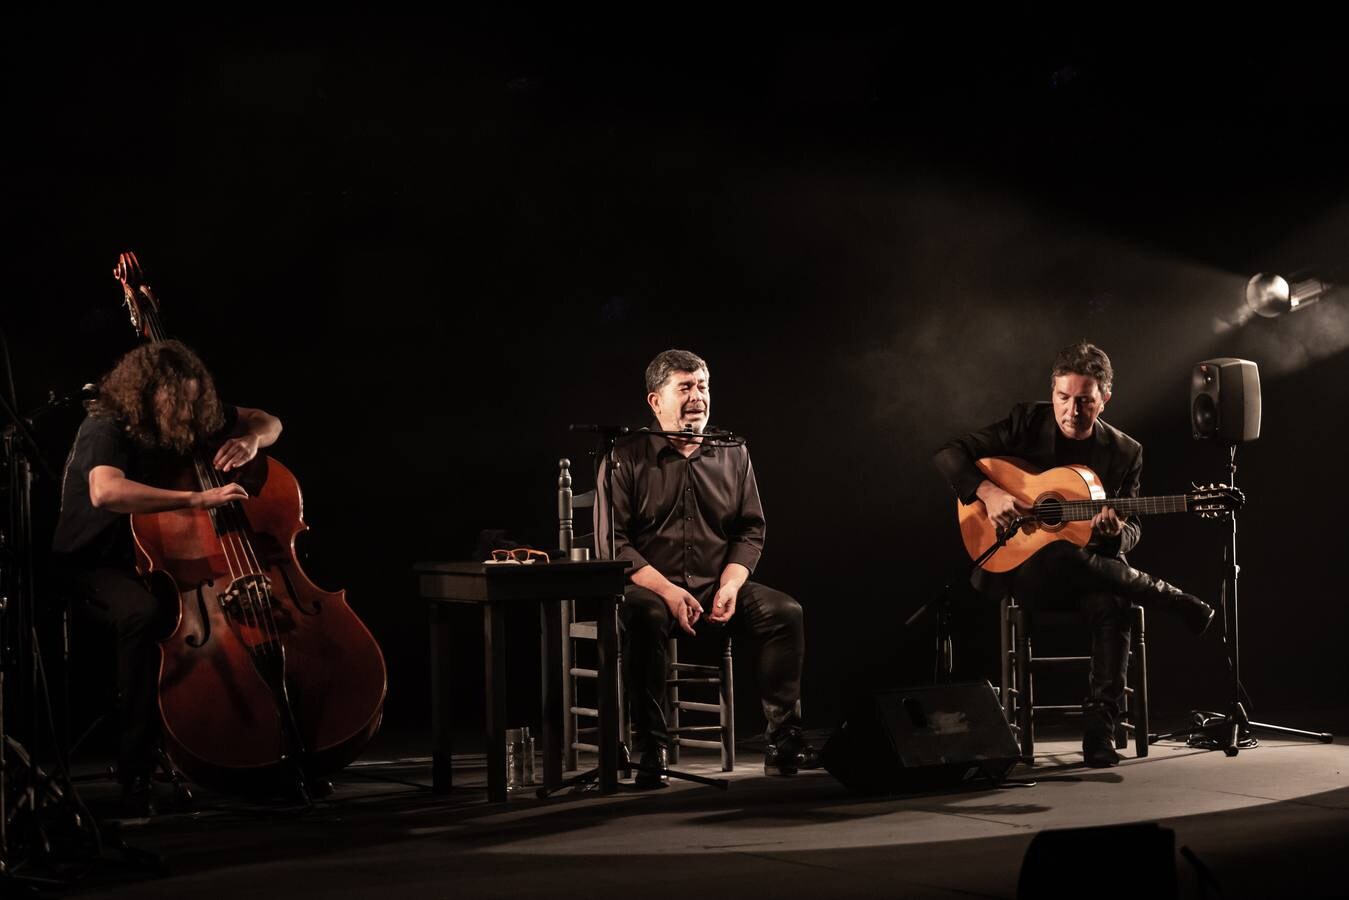 Bienal de Flamenco 2020: Tomás de Perrate, entre lo clásico y lo experimental